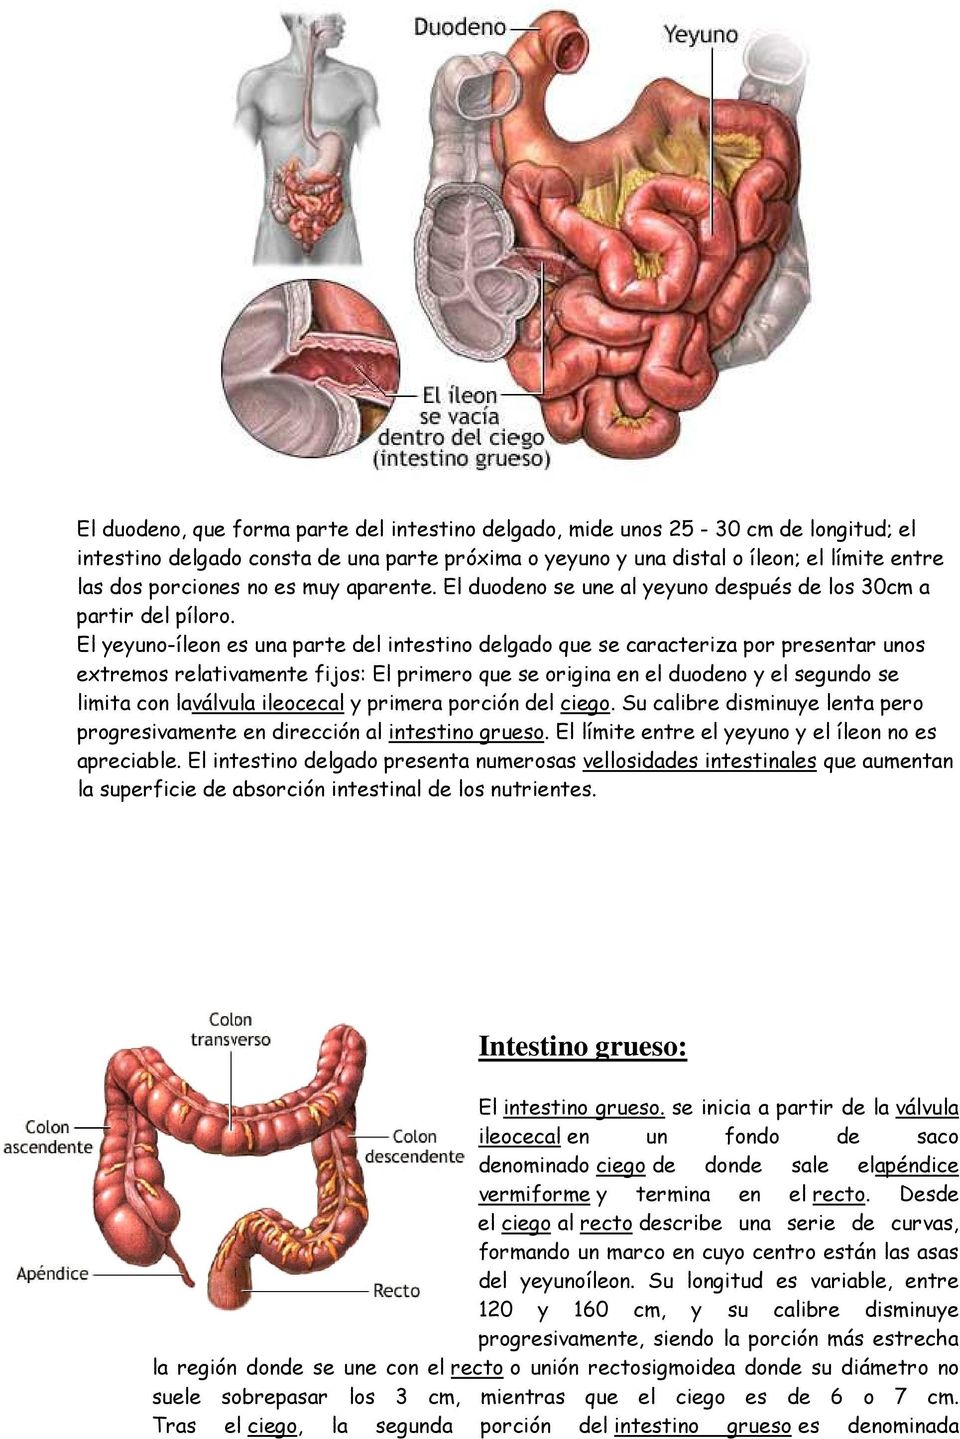 El yeyuno-íleon es una parte del intestino delgado que se caracteriza por presentar unos extremos relativamente fijos: El primero que se origina en el duodeno y el segundo se limita con laválvula